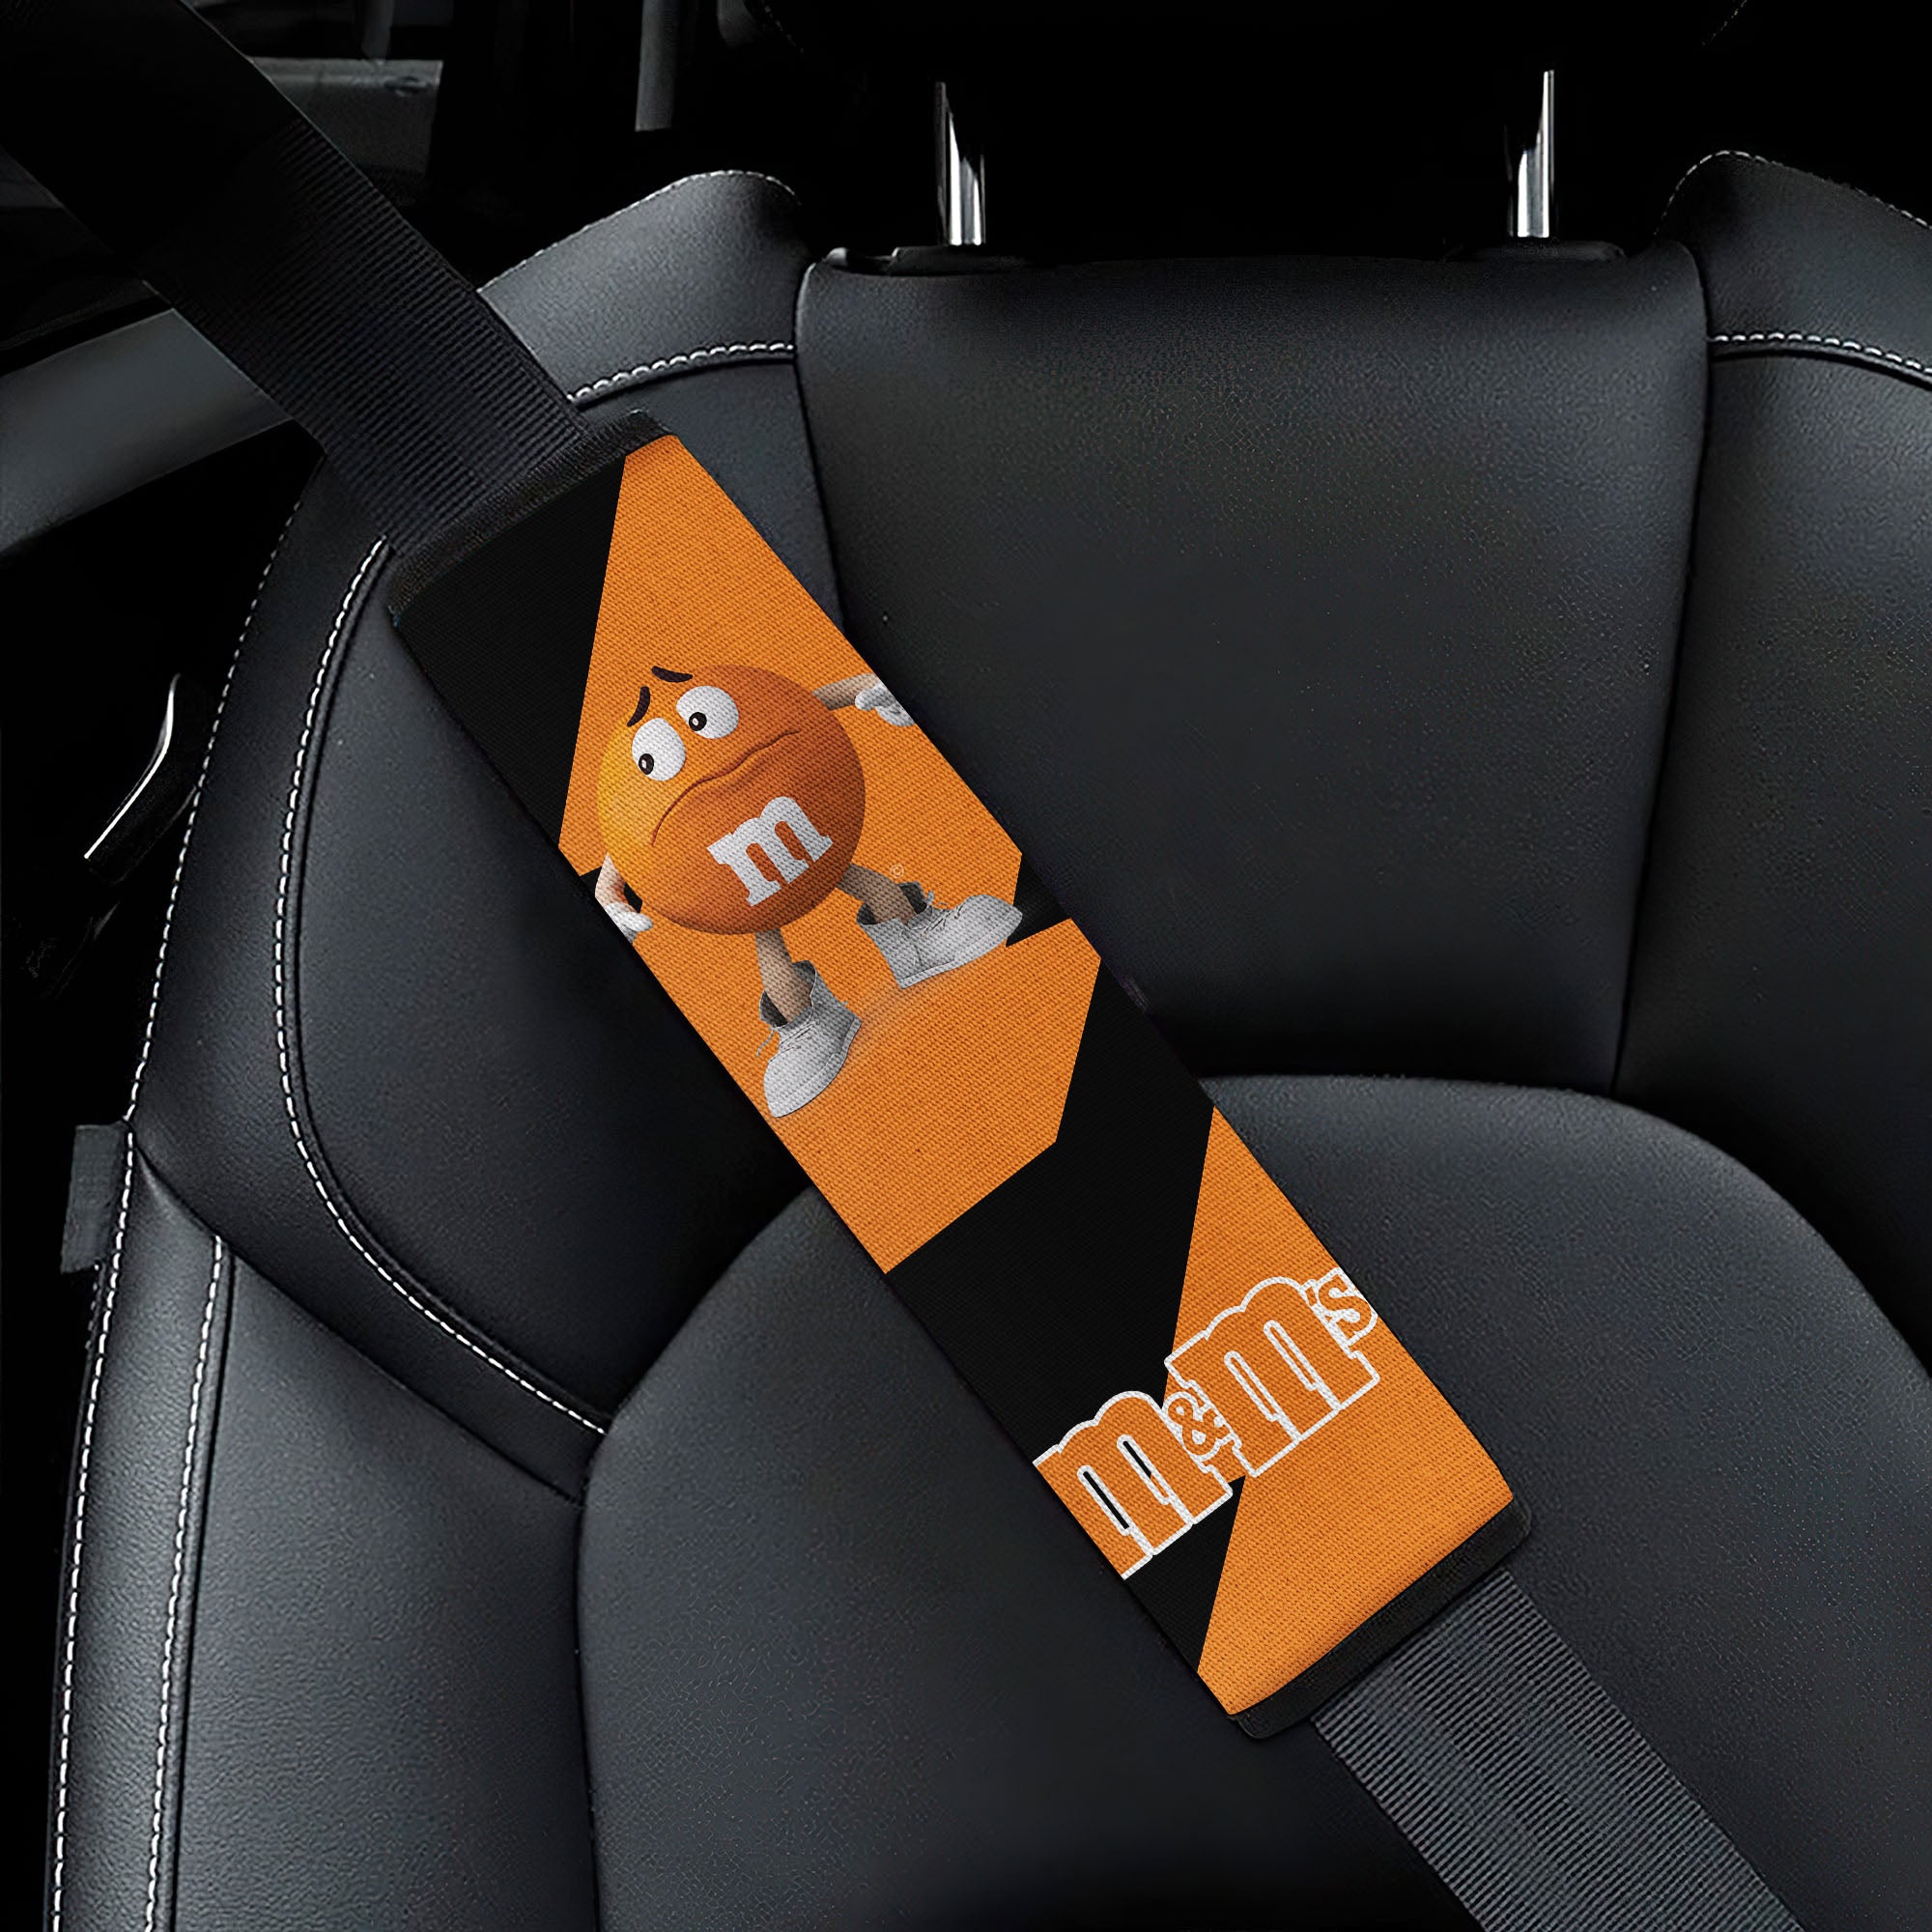 M&M's Candy Ice Cream Cones Chocolate Orange car seat belt covers Custom Car Accessories